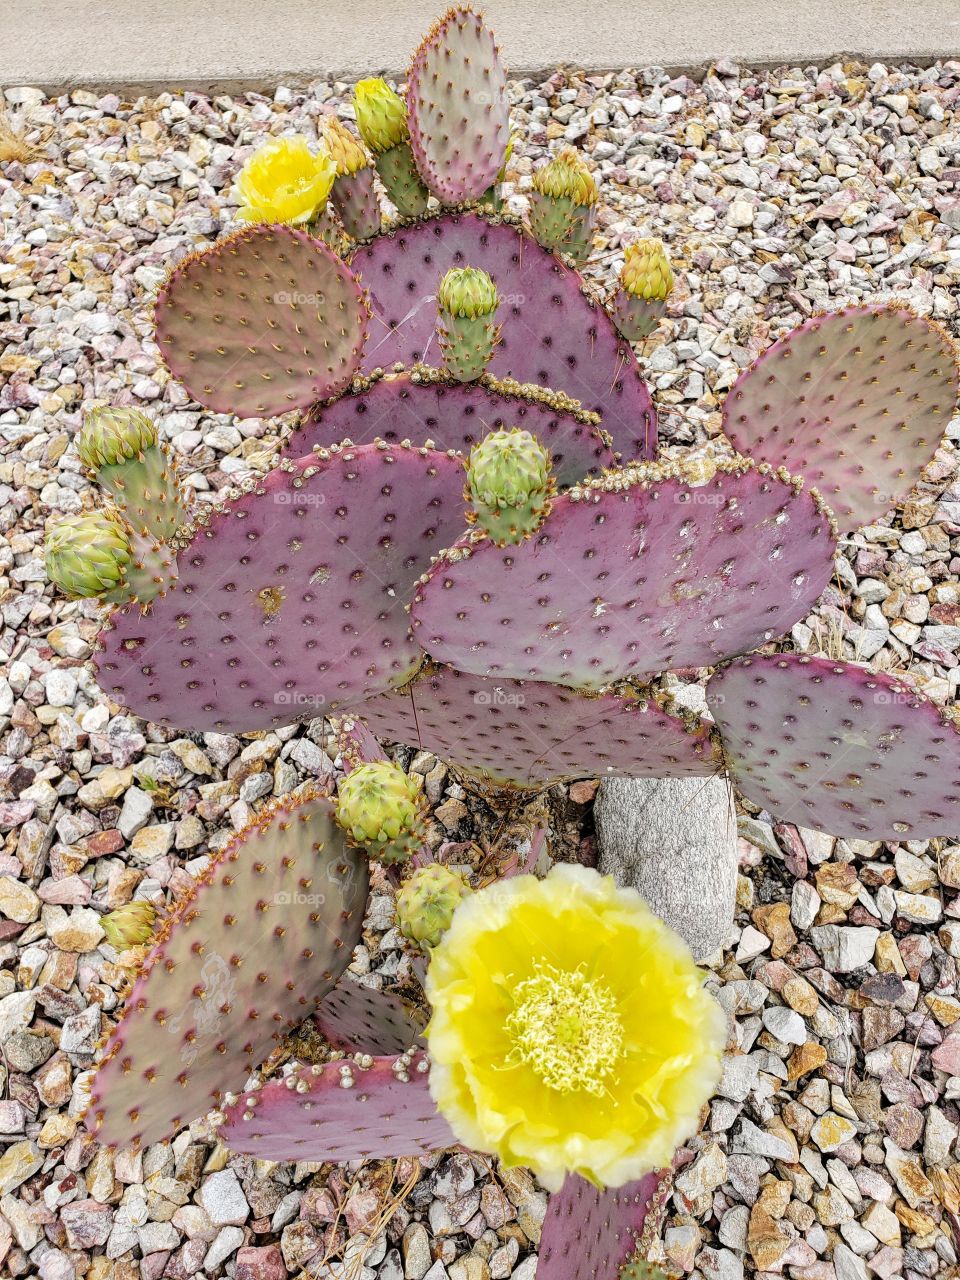 cactus in bloom